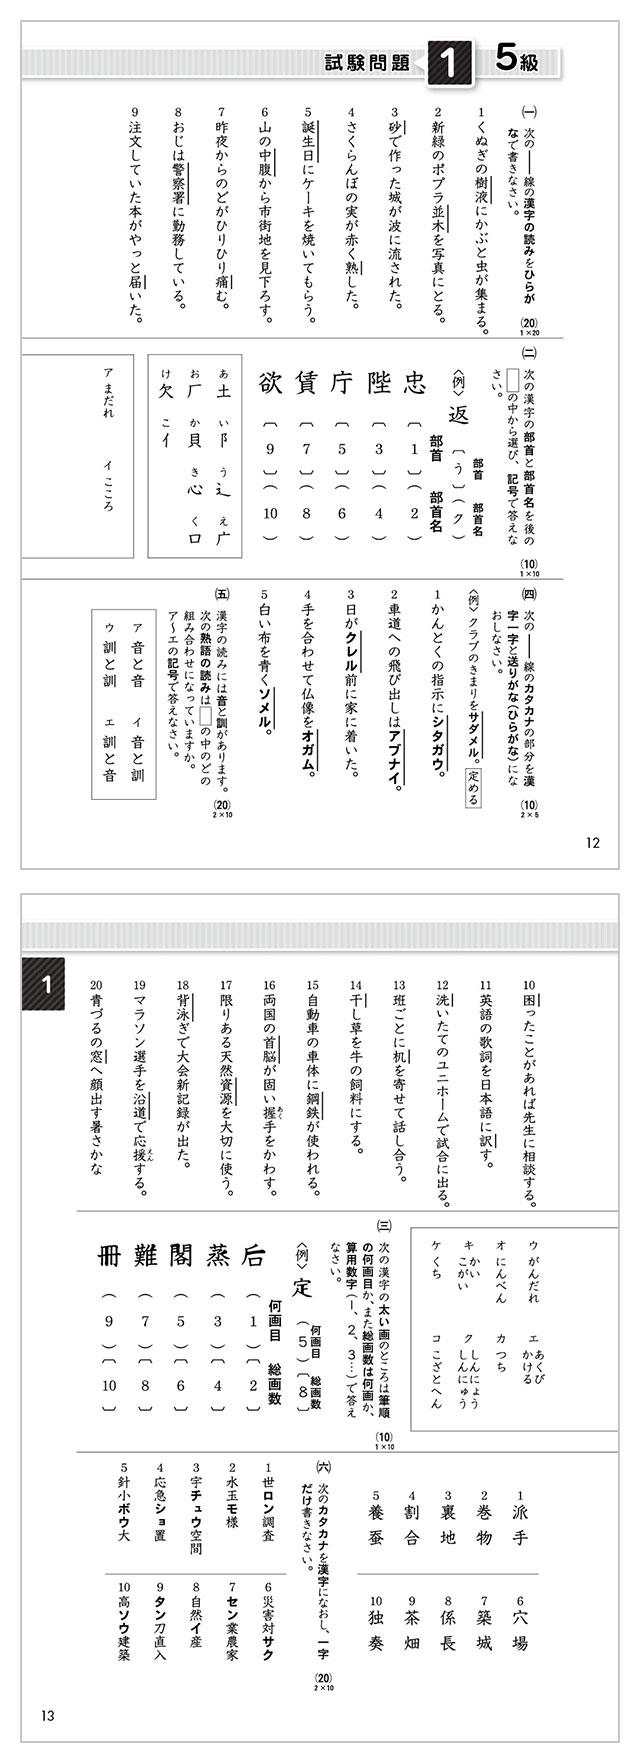 ここへ到着する 10 級 漢字検定 過去問 ジャカトメガ